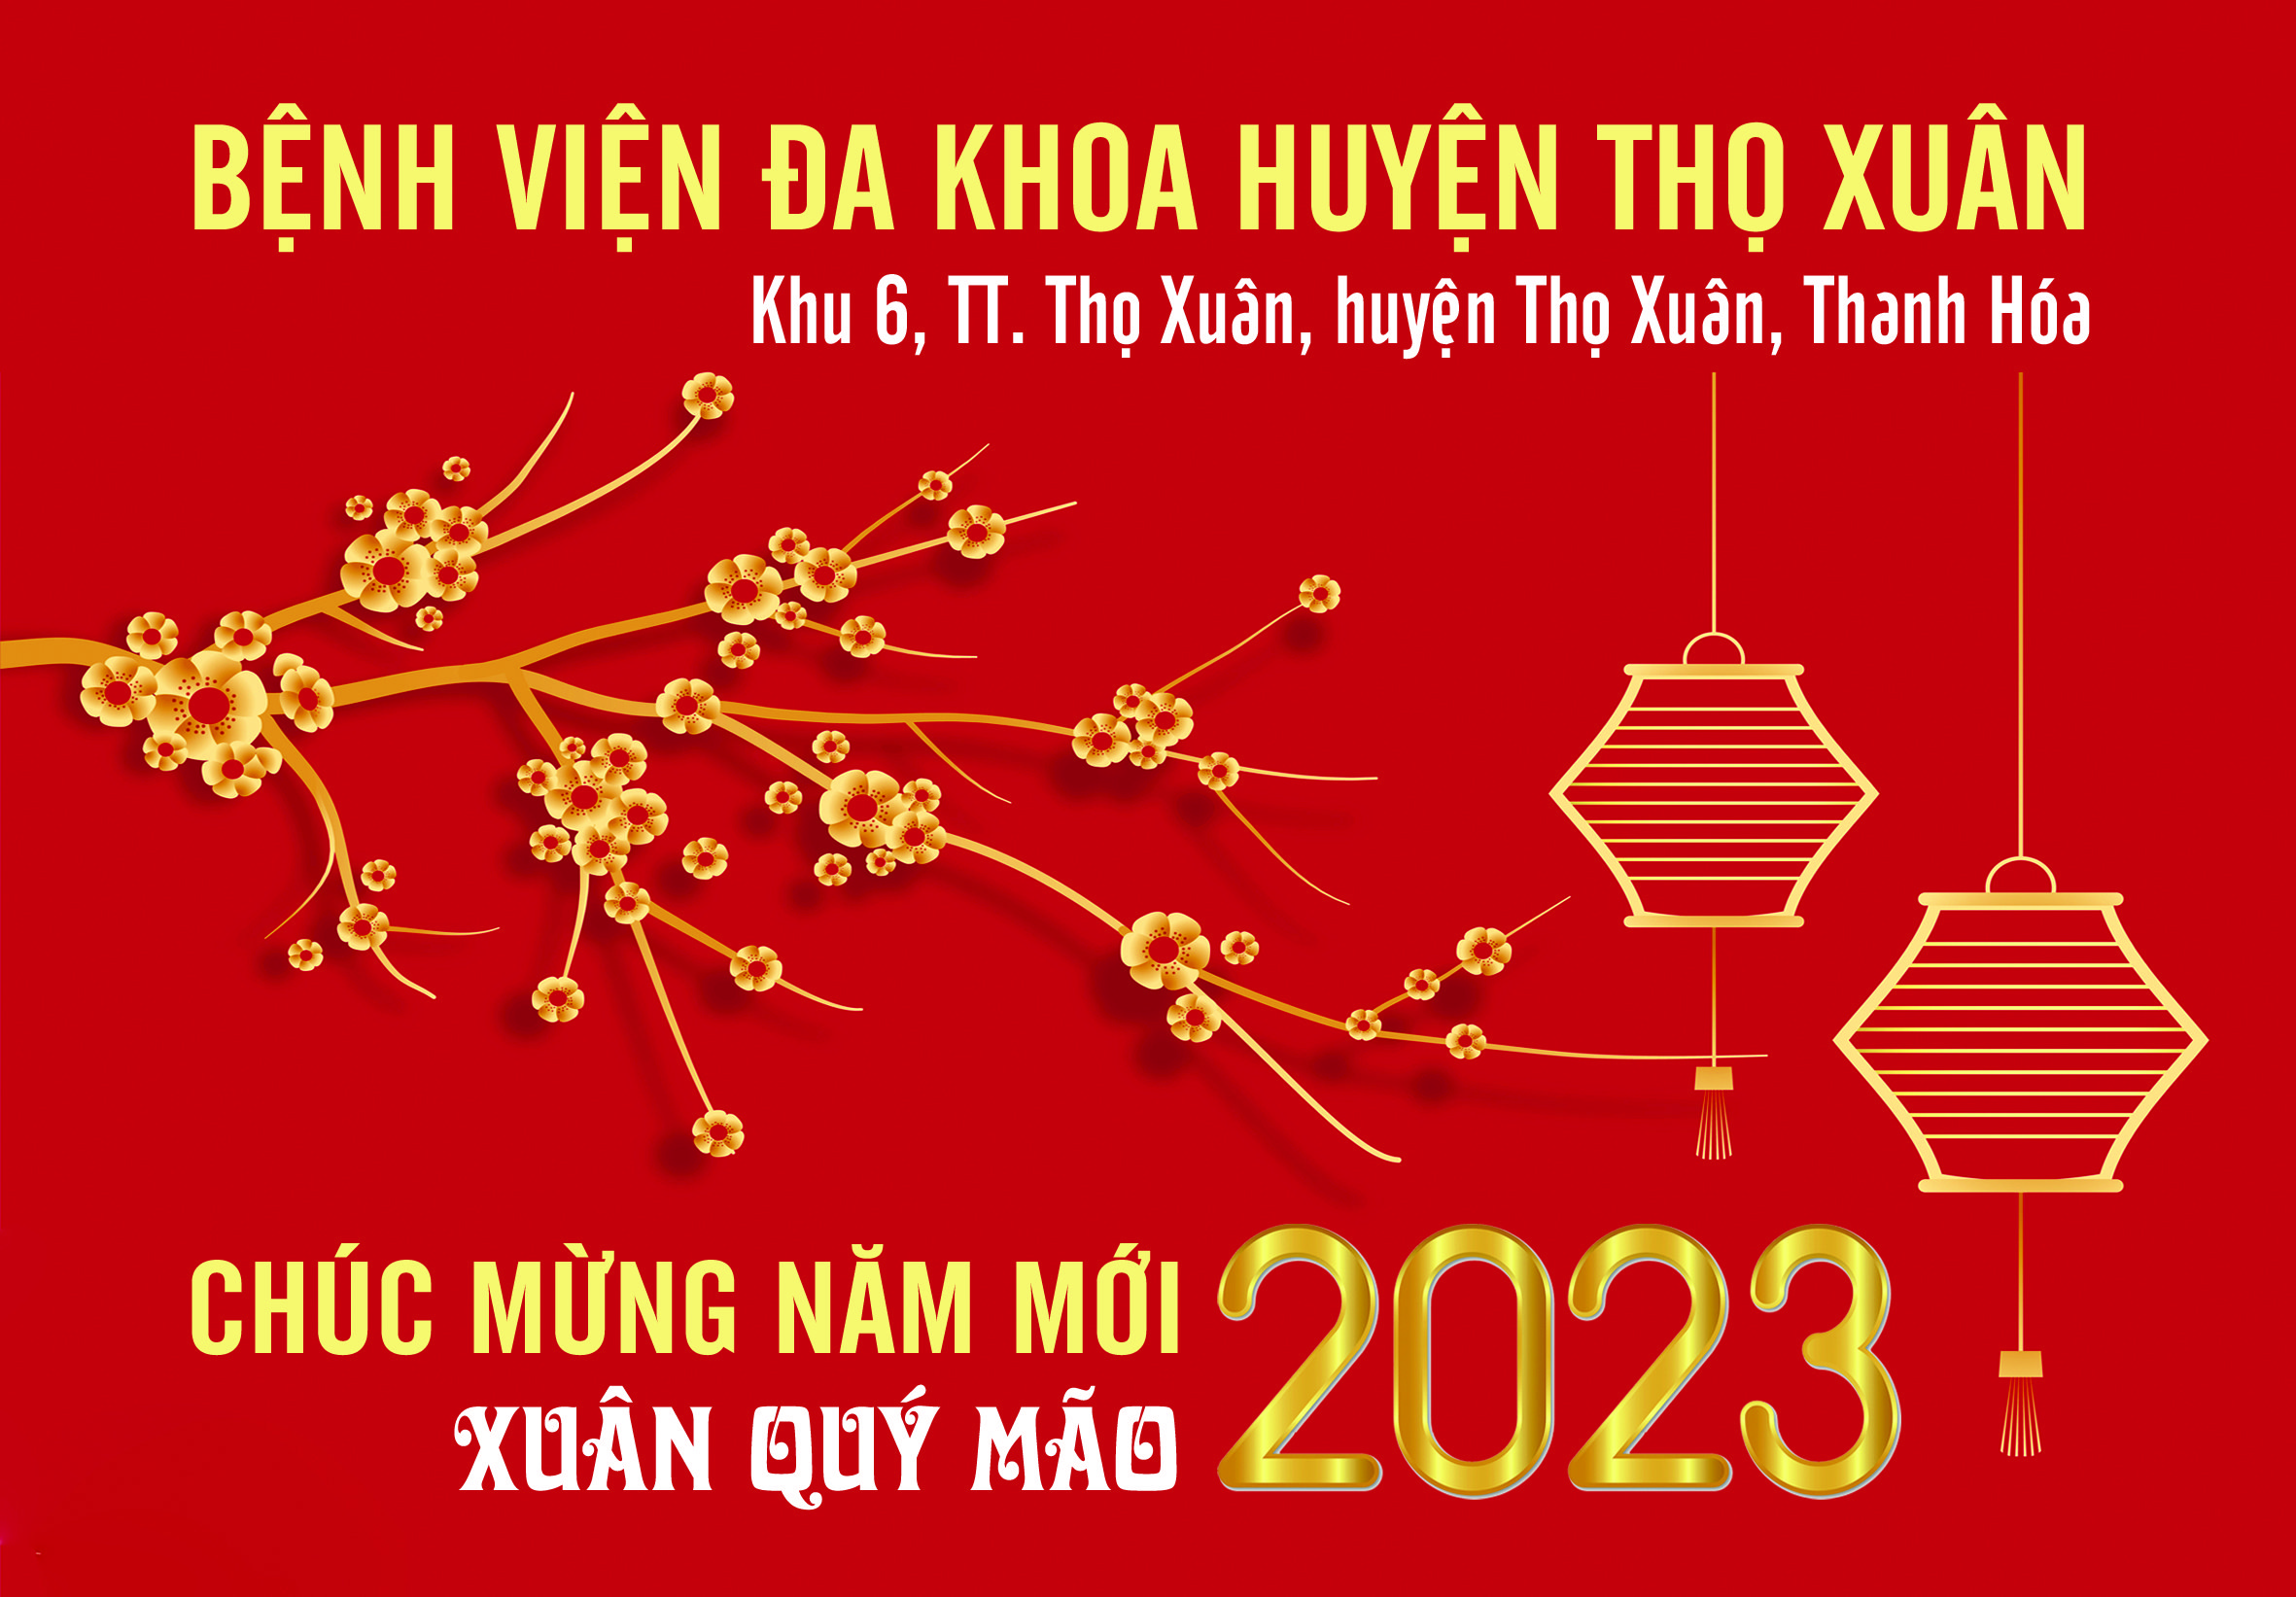 BV DK Tho Xuan 2023 01